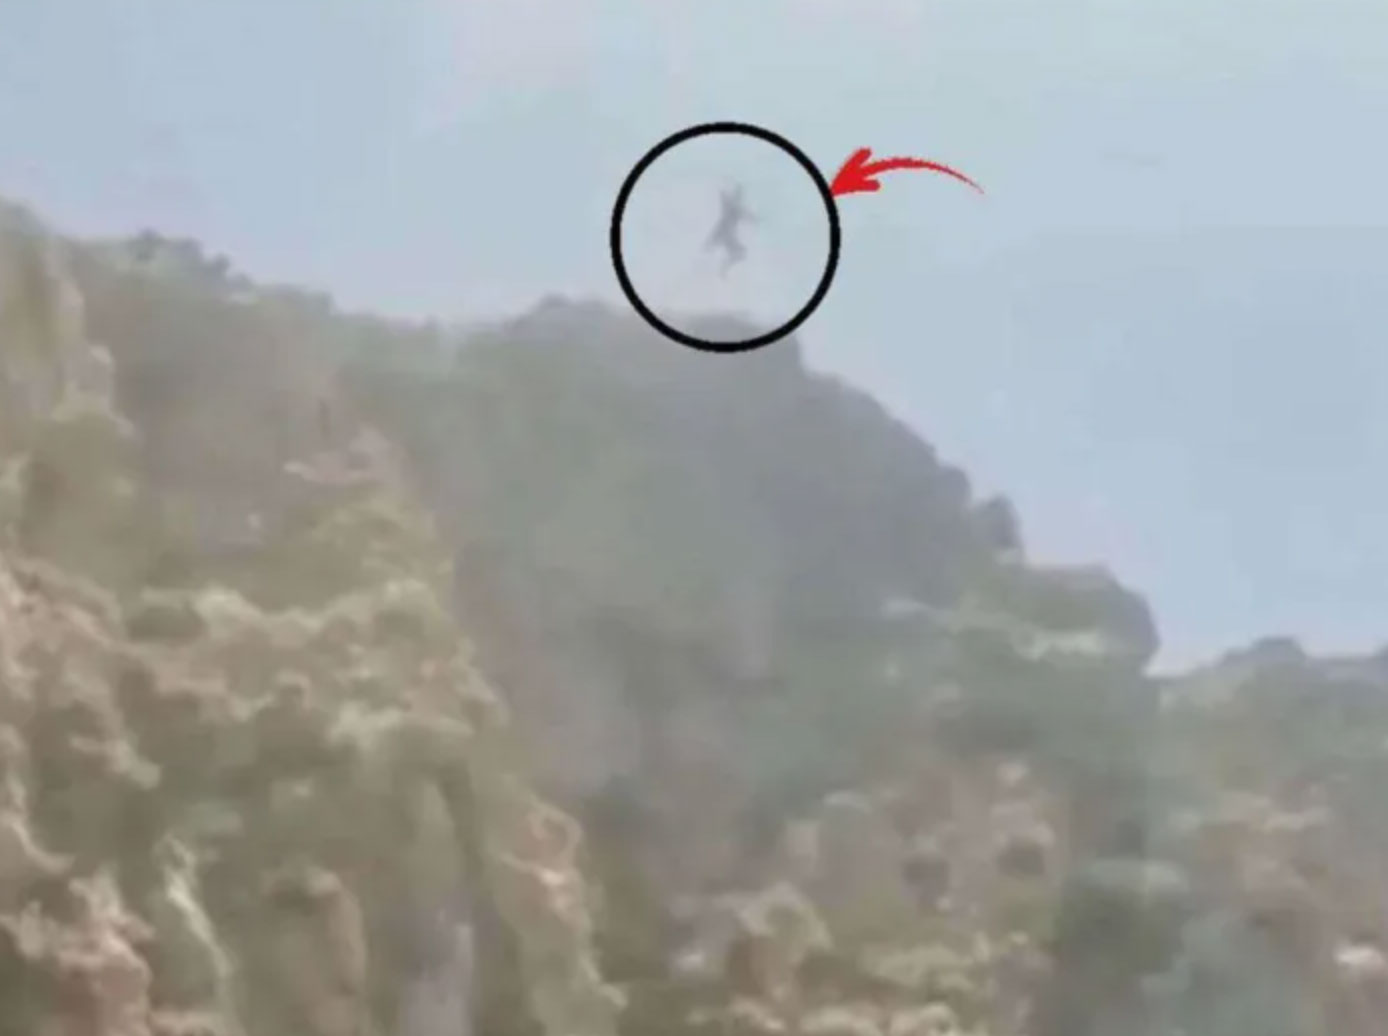 Turista fallece tras saltar desde acantilado, todo quedó grabado